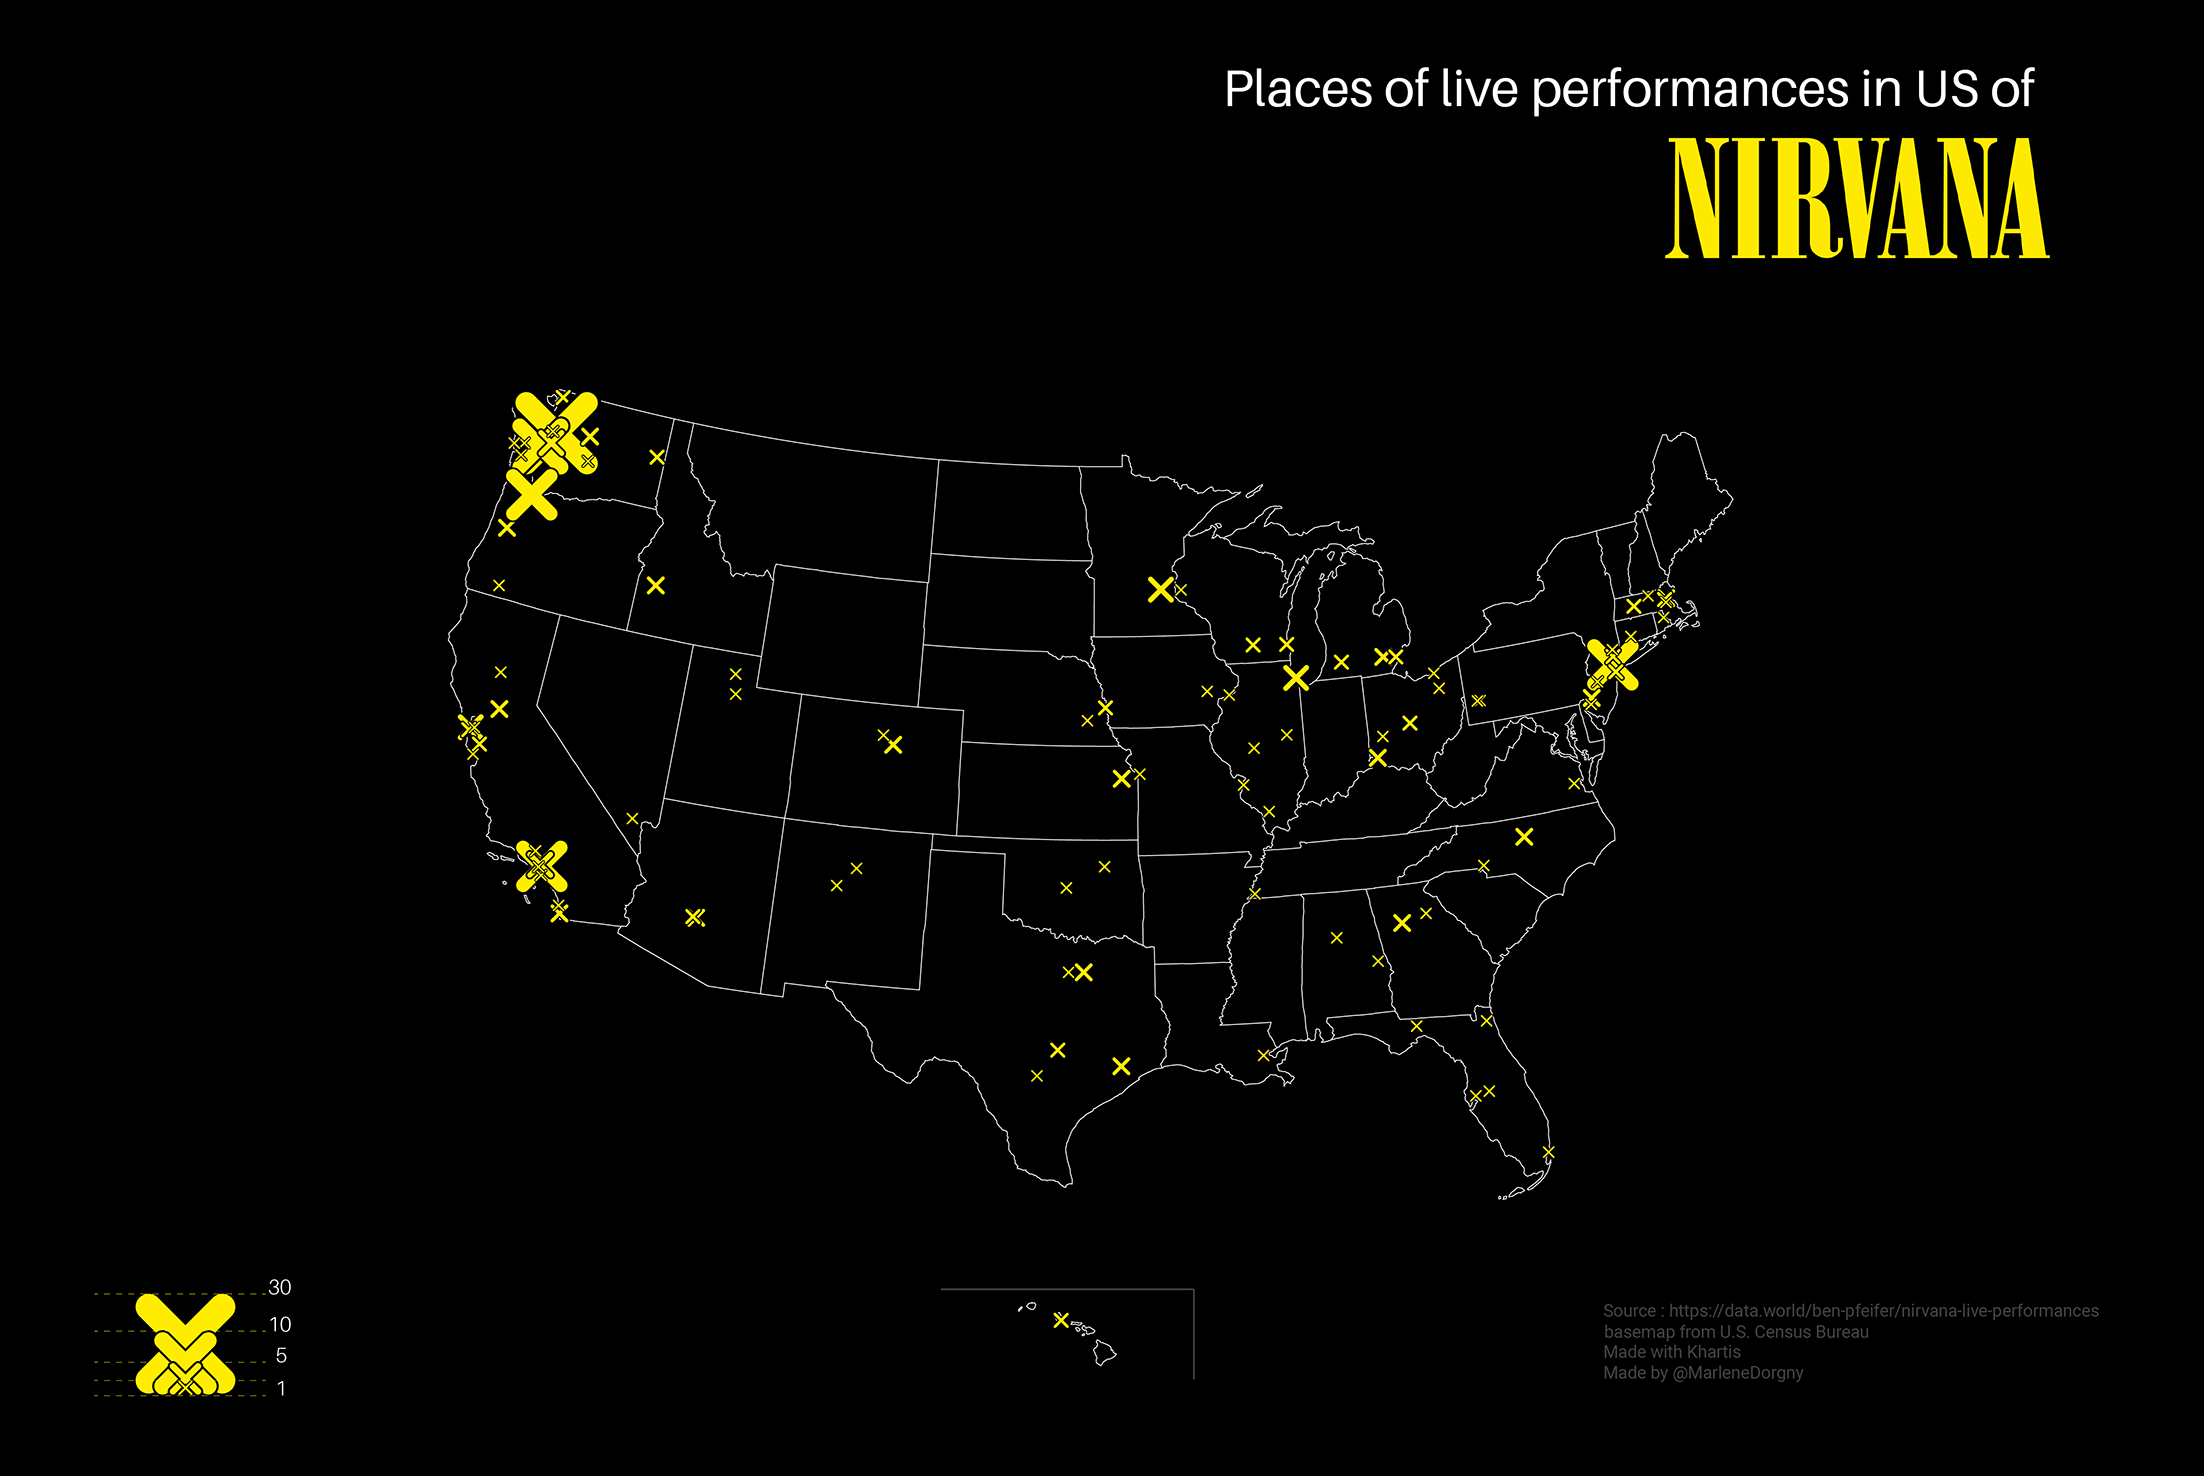 Cartographie des endroits où Nirvana a joué en live aux Etats-Unis